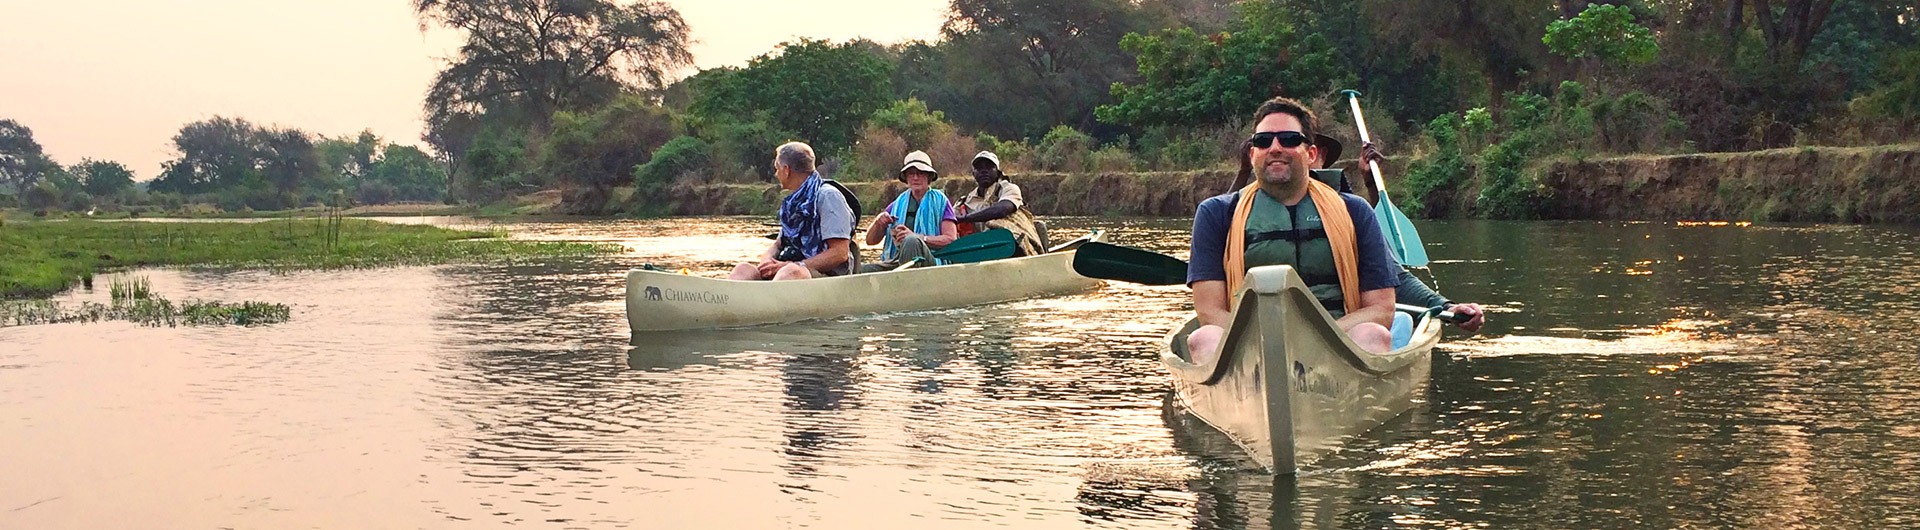 Canoeing the Lower Zambezi River, Zambia